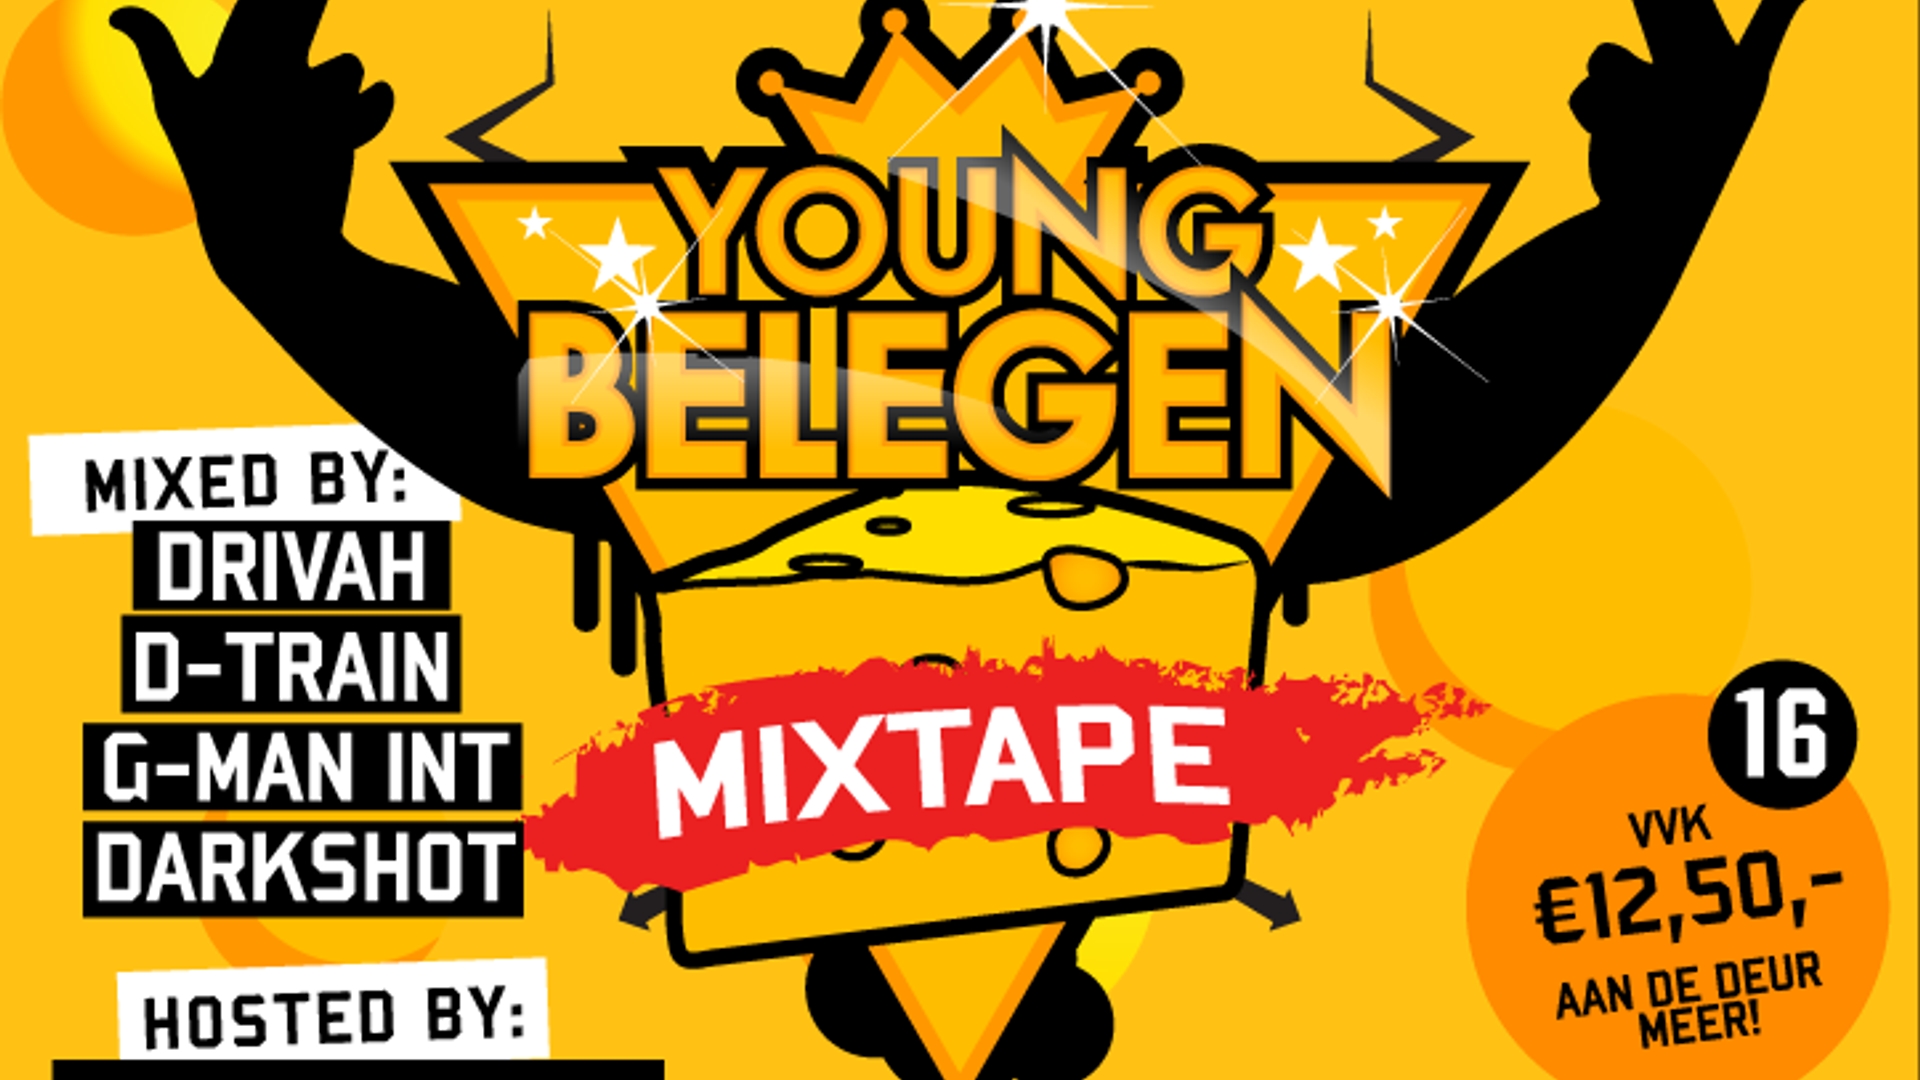 Youngbelegen Mixtape